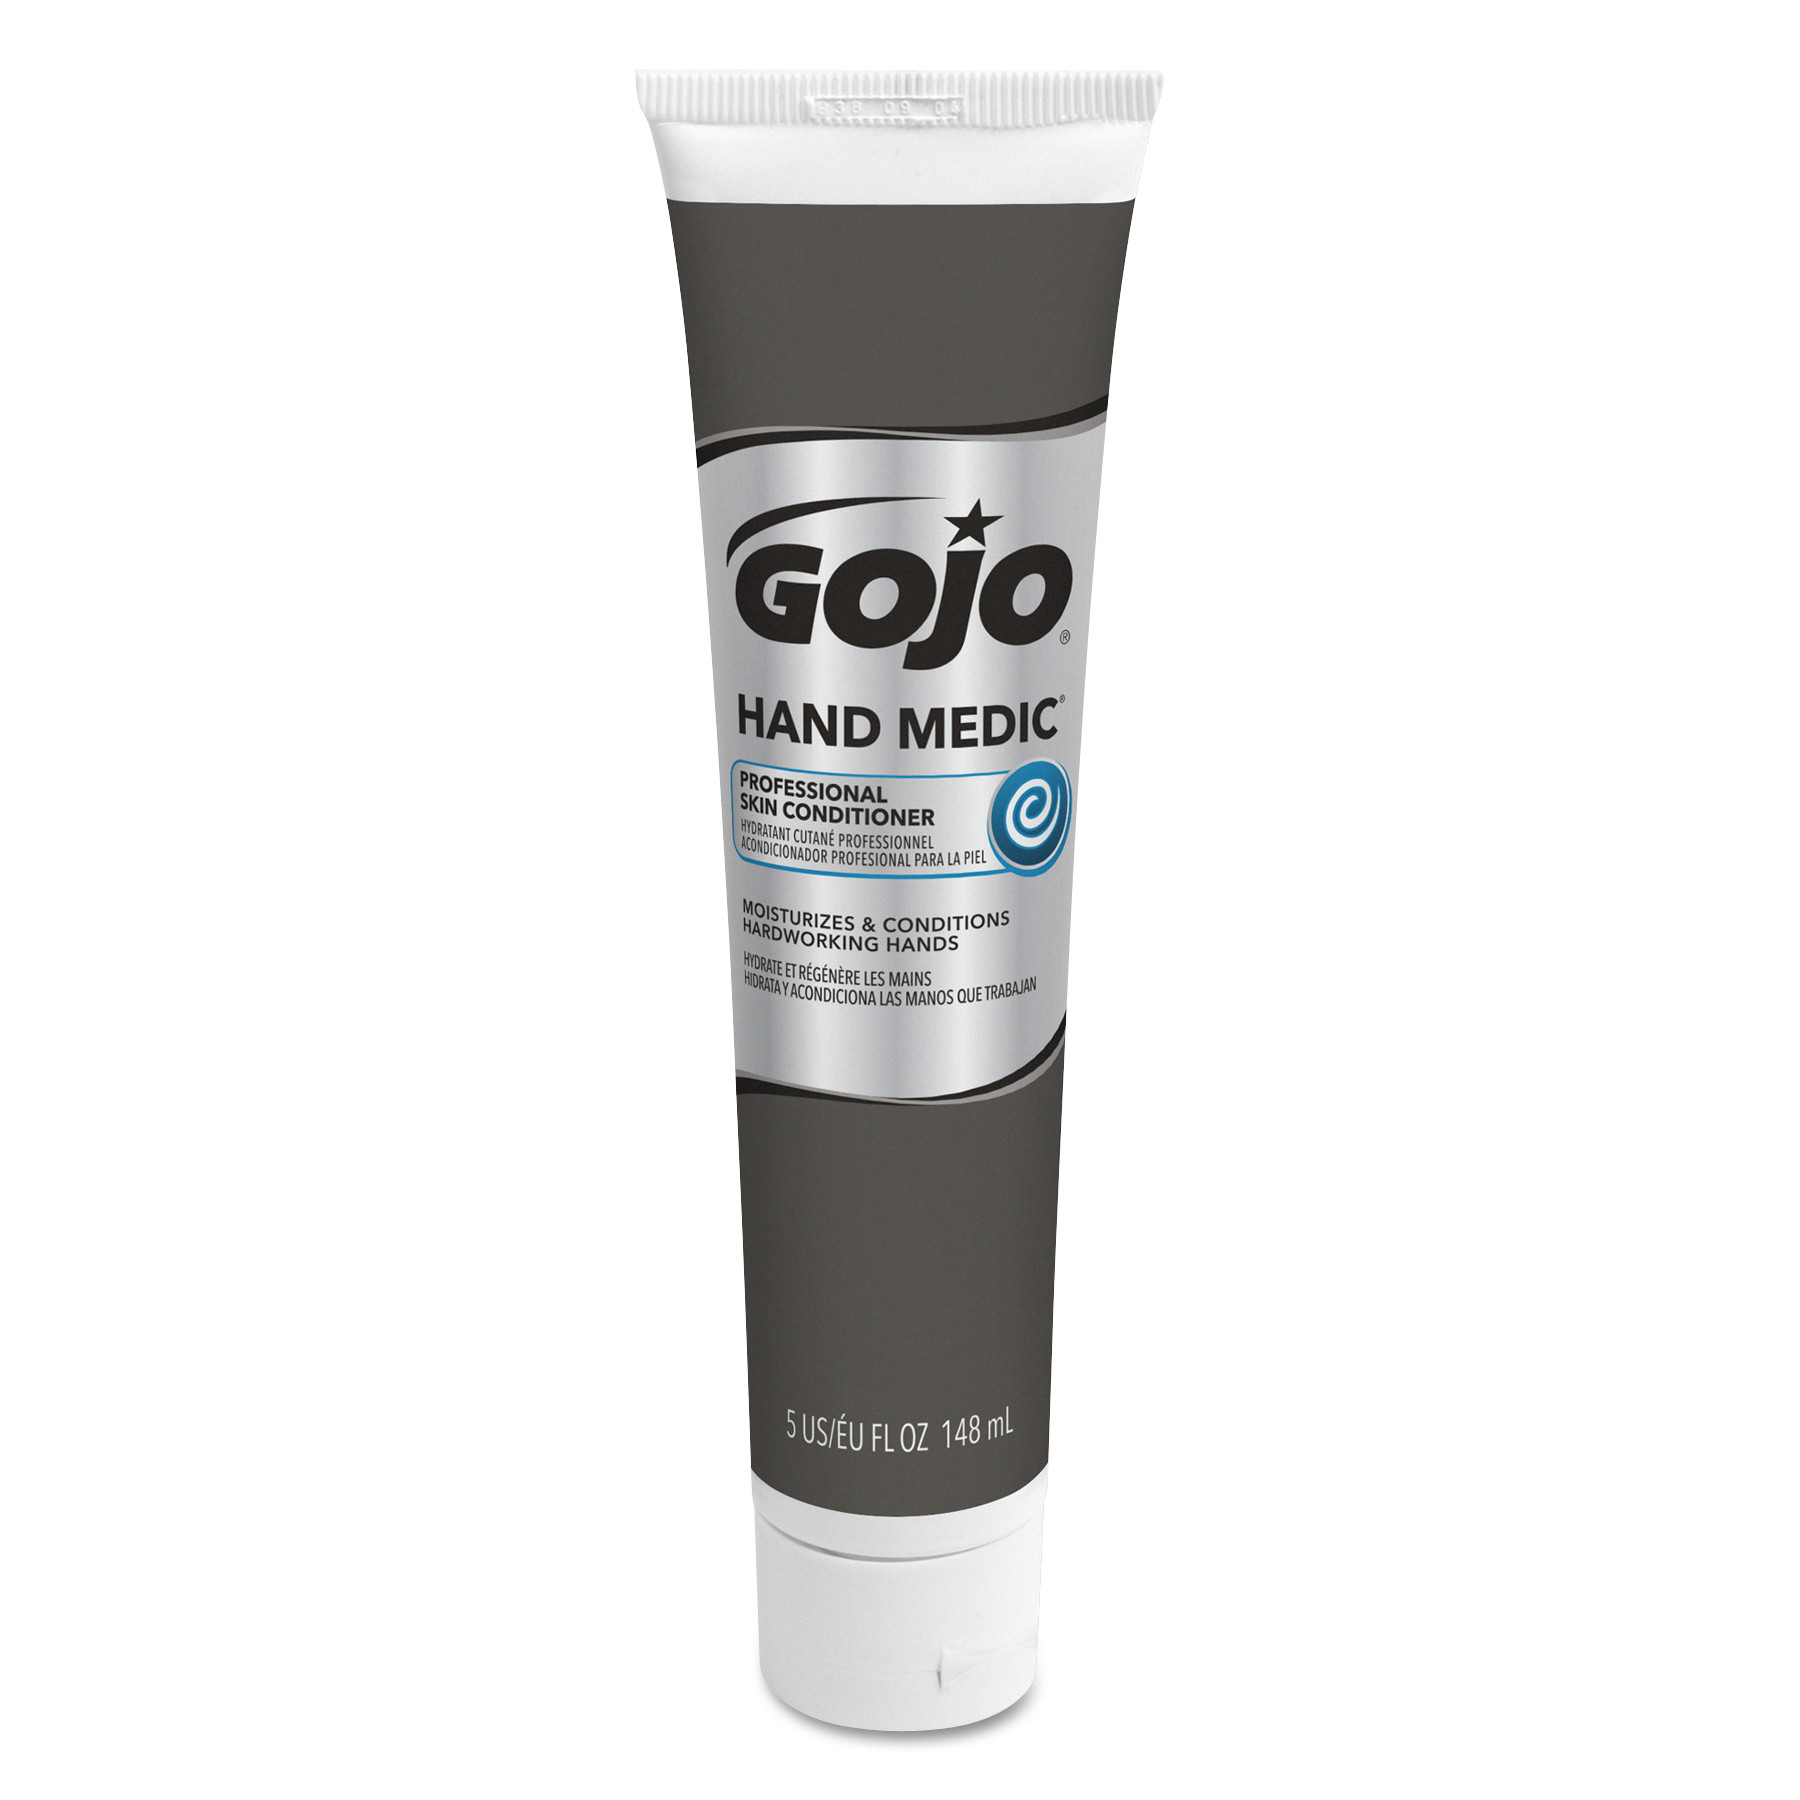  GOJO 8150-12 HAND MEDIC Professional Skin Conditioner, 5 oz Tube, 12/Carton (GOJ815012) 